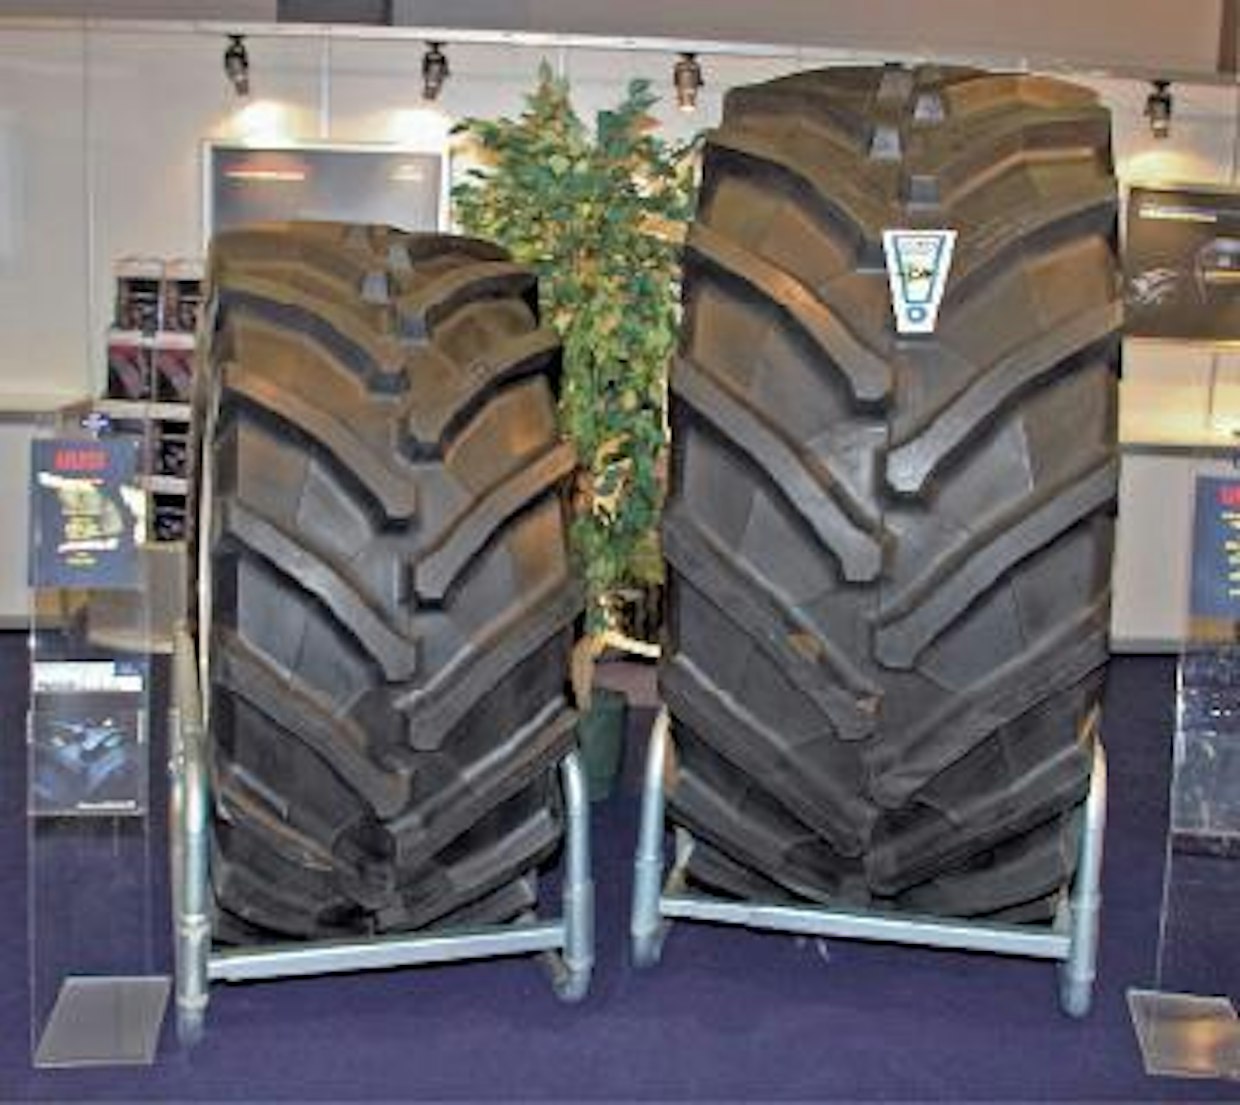 Trelleborg esitteli yli 300 hevosvoiman traktoreihin tarkoitetun TM 900 renkaan, jonka halkaisija on 214 senttiä ja leveys 90 cm. Miestä korkeampi takarengas tarvitsee parikseen 710 mm leveä 34 ” eturenkaan. Trelleborg/Euromaster (UO).